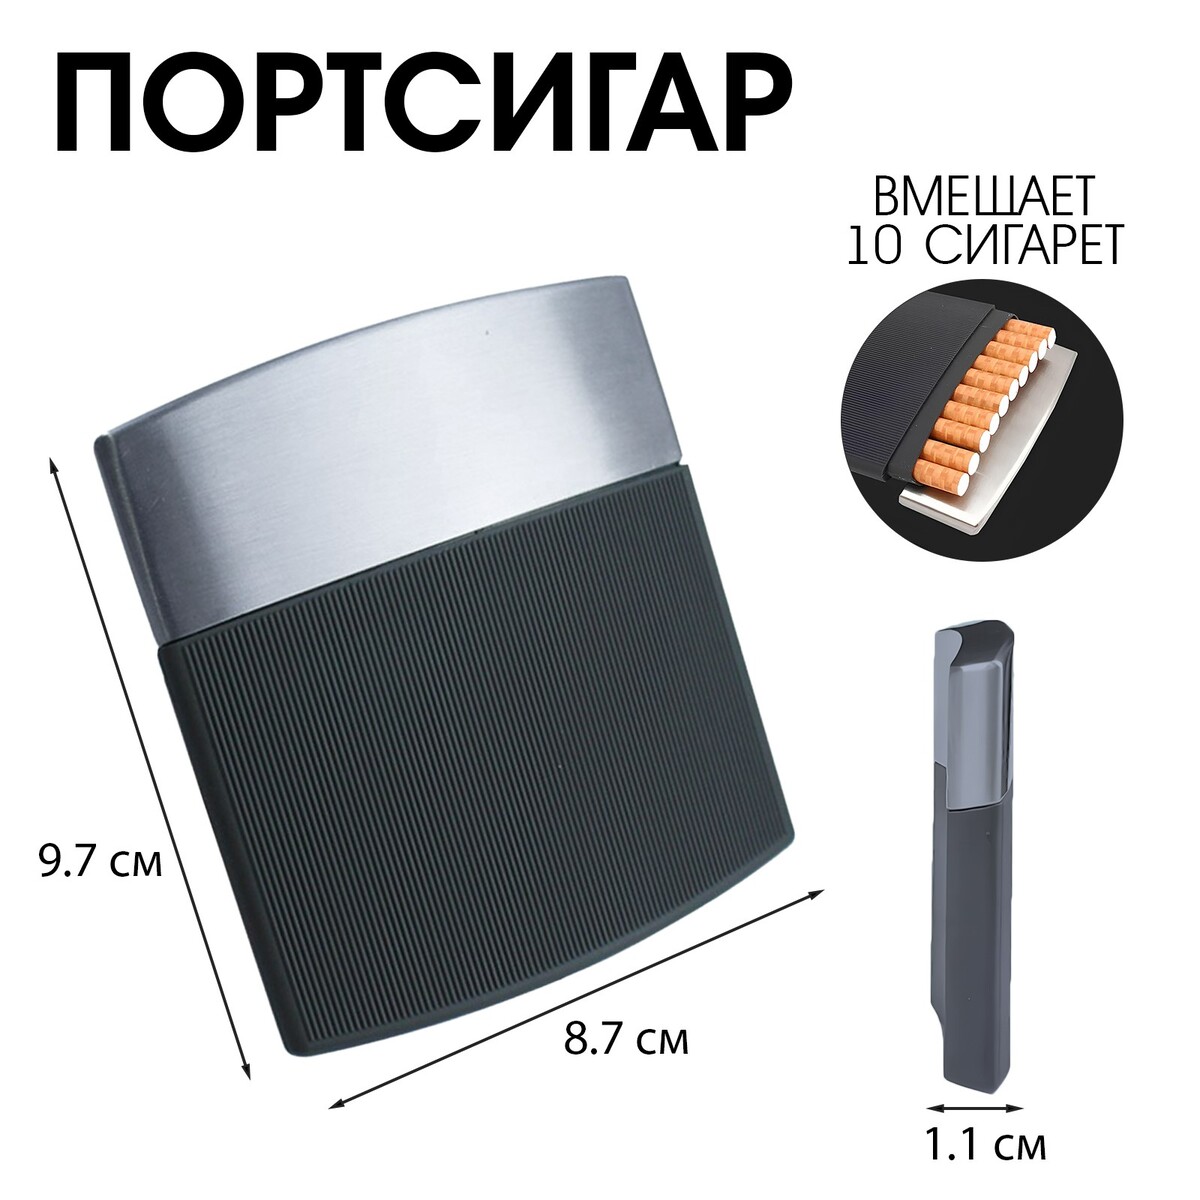 Портсигар на 10 сигарет, нержавеющая сталь, ультратонкий портсигар на 14 сигарет 9 2 х 6 7 х 1 3 см